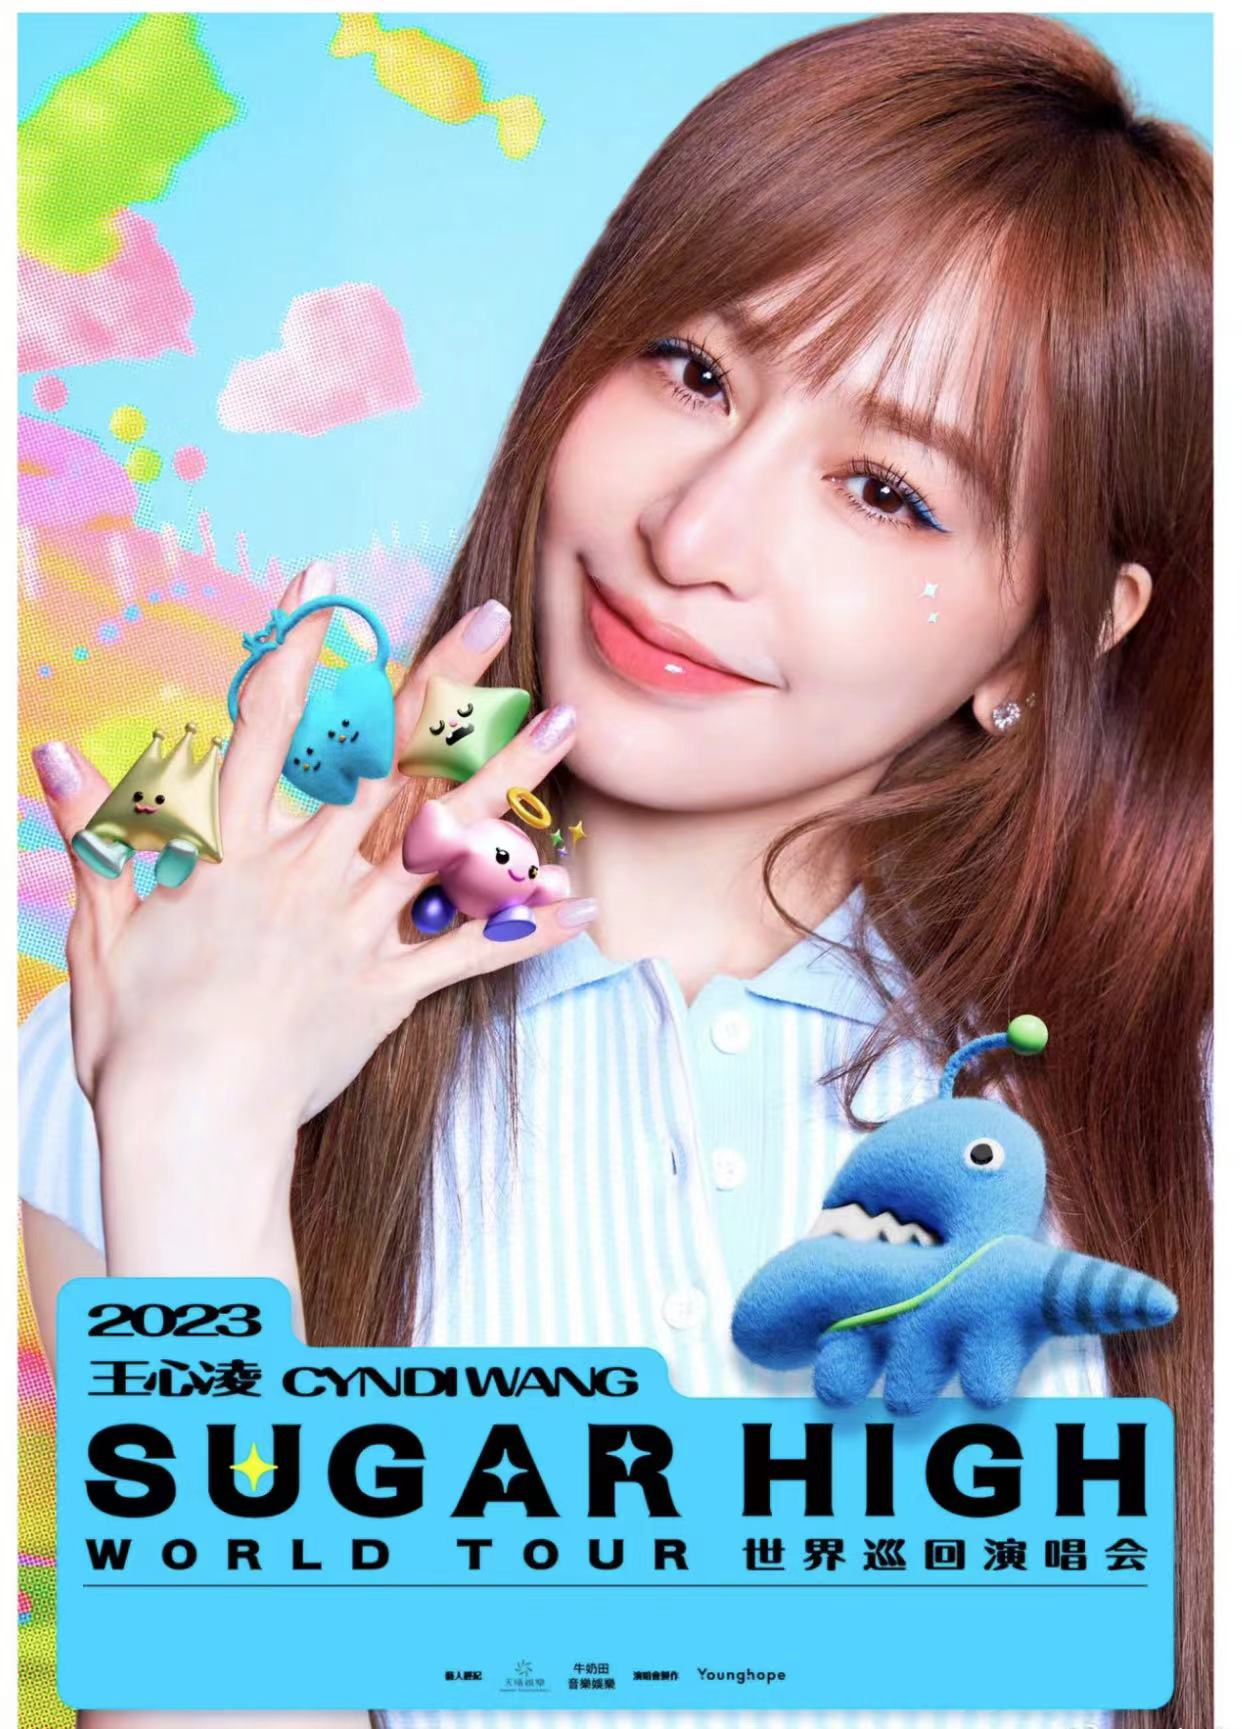 [西安]王心凌 2023「sugar high」巡回演唱会-西安站